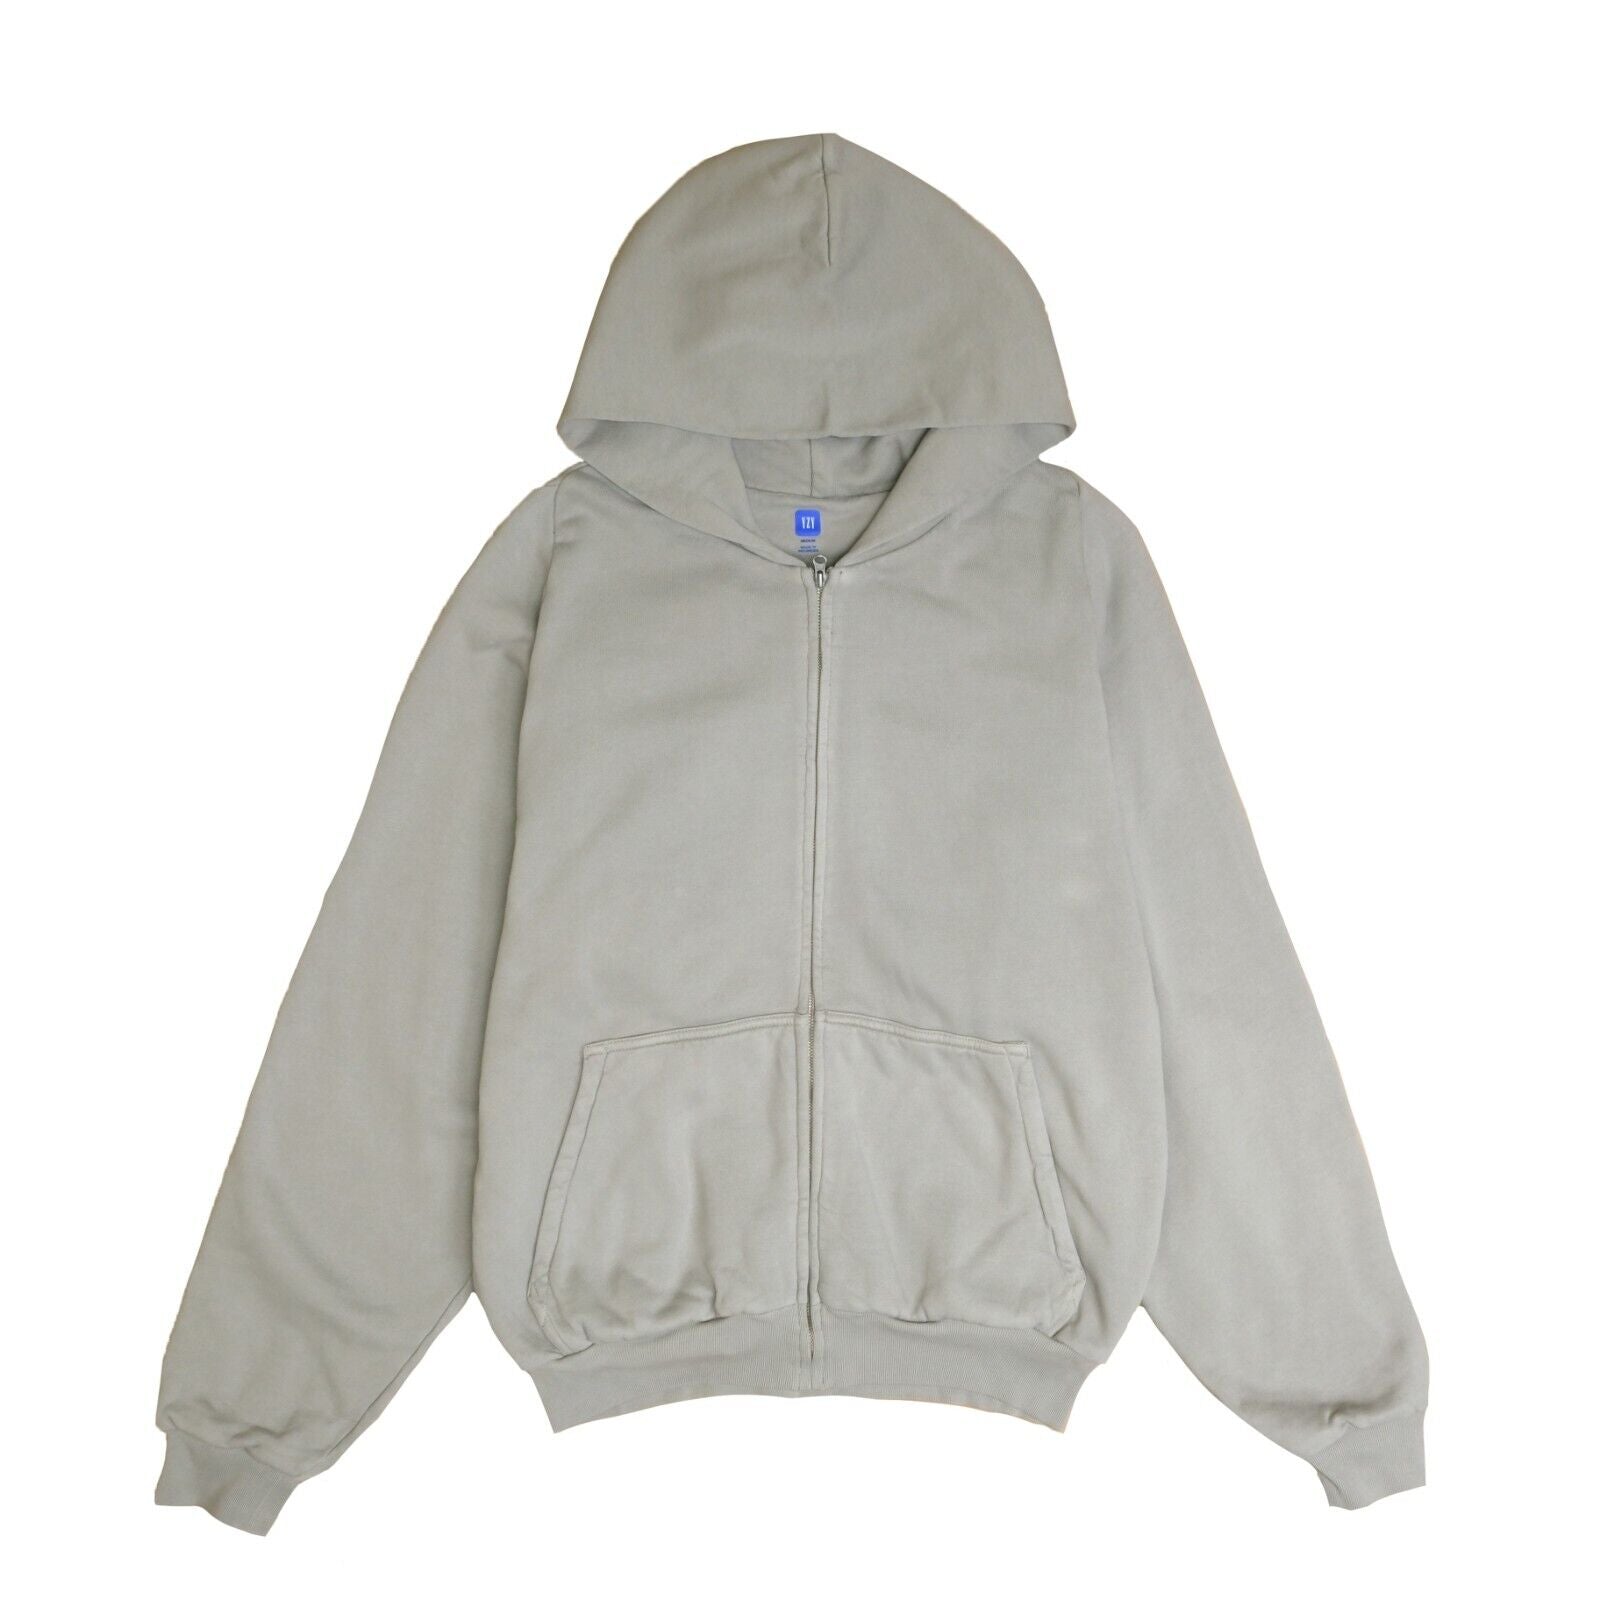 Yeezy Gap Unreleased Zip Sweatshirt Hoodie Size Medium Gray